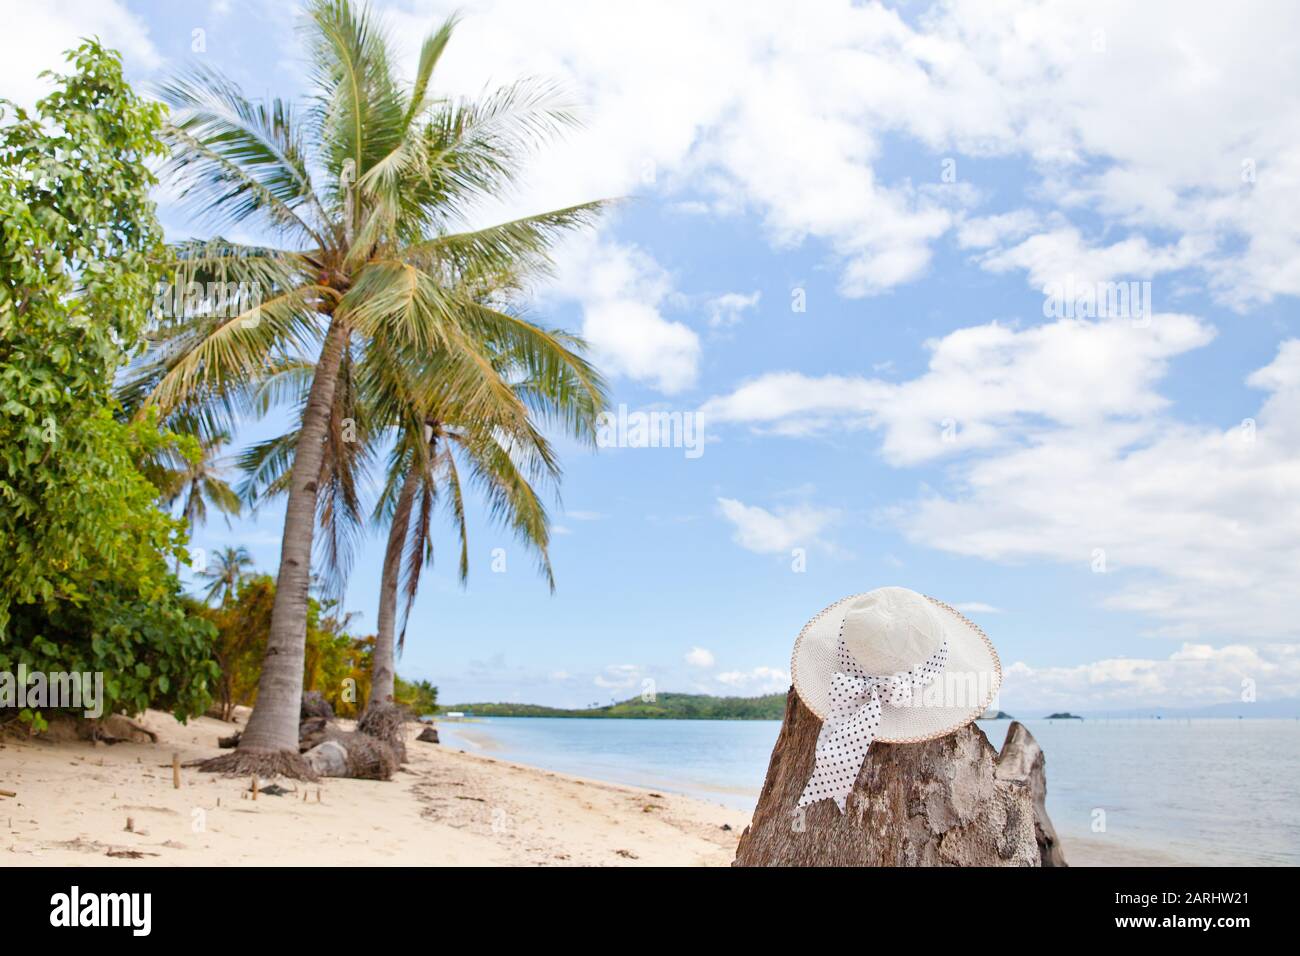 Hut am Strand. Schöner Hut am Strand, Sonnenschutzkonzept. Stillleben mit Hut. Landschaft auf einer tropischen Insel. Tropischer Strand. Stockfoto